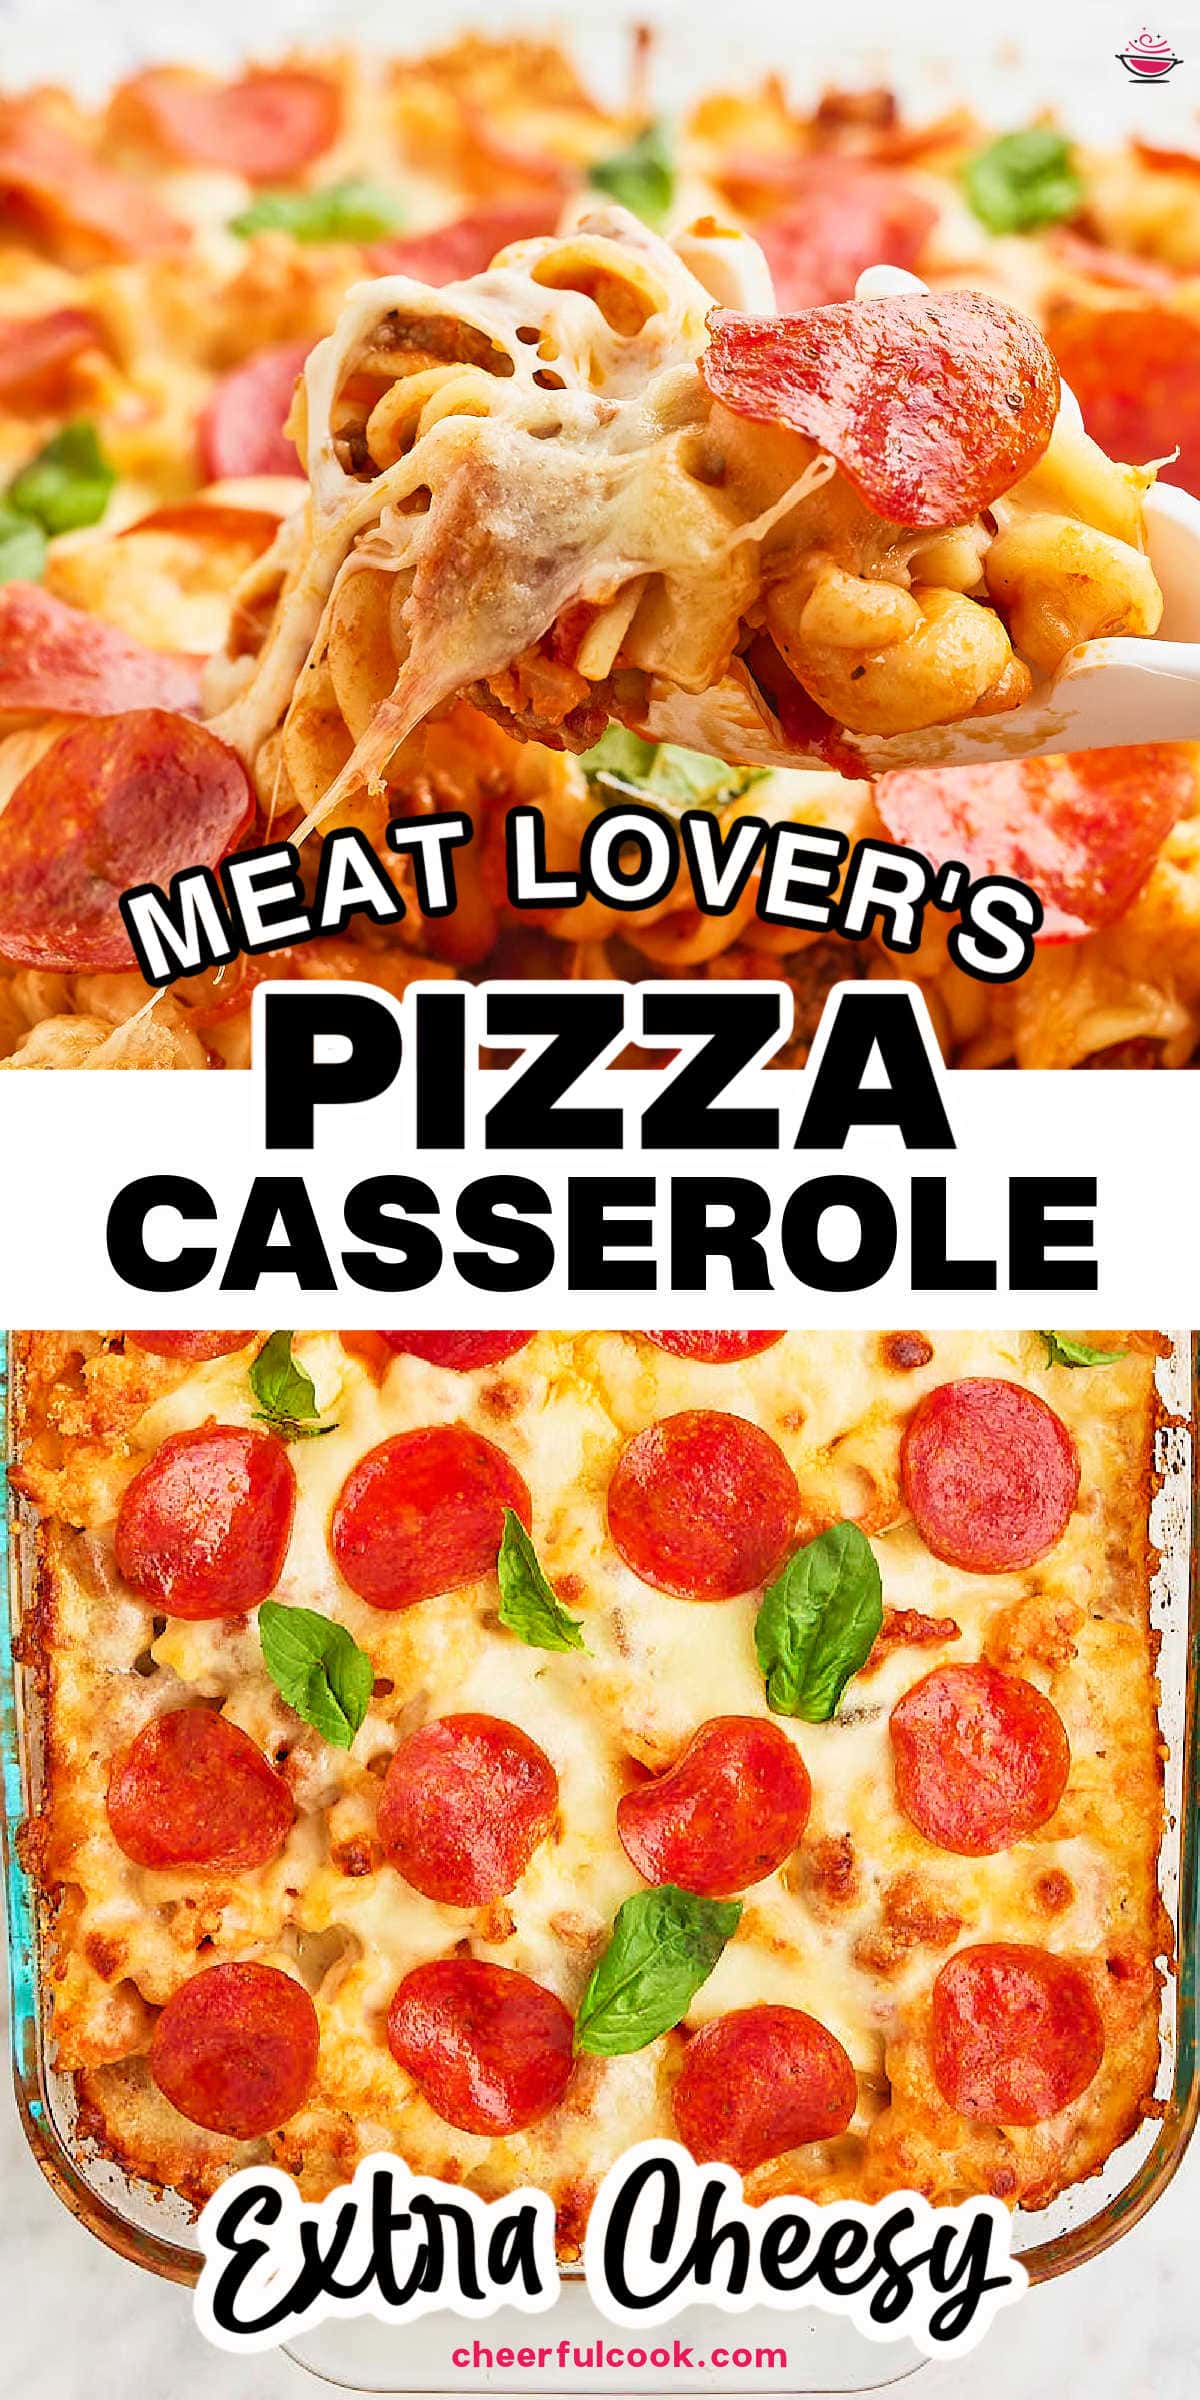 满足你的新晚餐困扰:我们的披萨的腿!加载这丰盛的菜你心爱的披萨口味——意大利香肠,牛肉,培根,意大利面,加番茄酱、感伤的奶酪,和撒上大胆的香料。就像一个披萨,但是更好。# cheerfulcook # PizzaCasserole # ComfortFood # 江南娱乐app网址苹果EasyRecipes #通过@cheerfulcook DinnerIdeasgydF4y2Ba